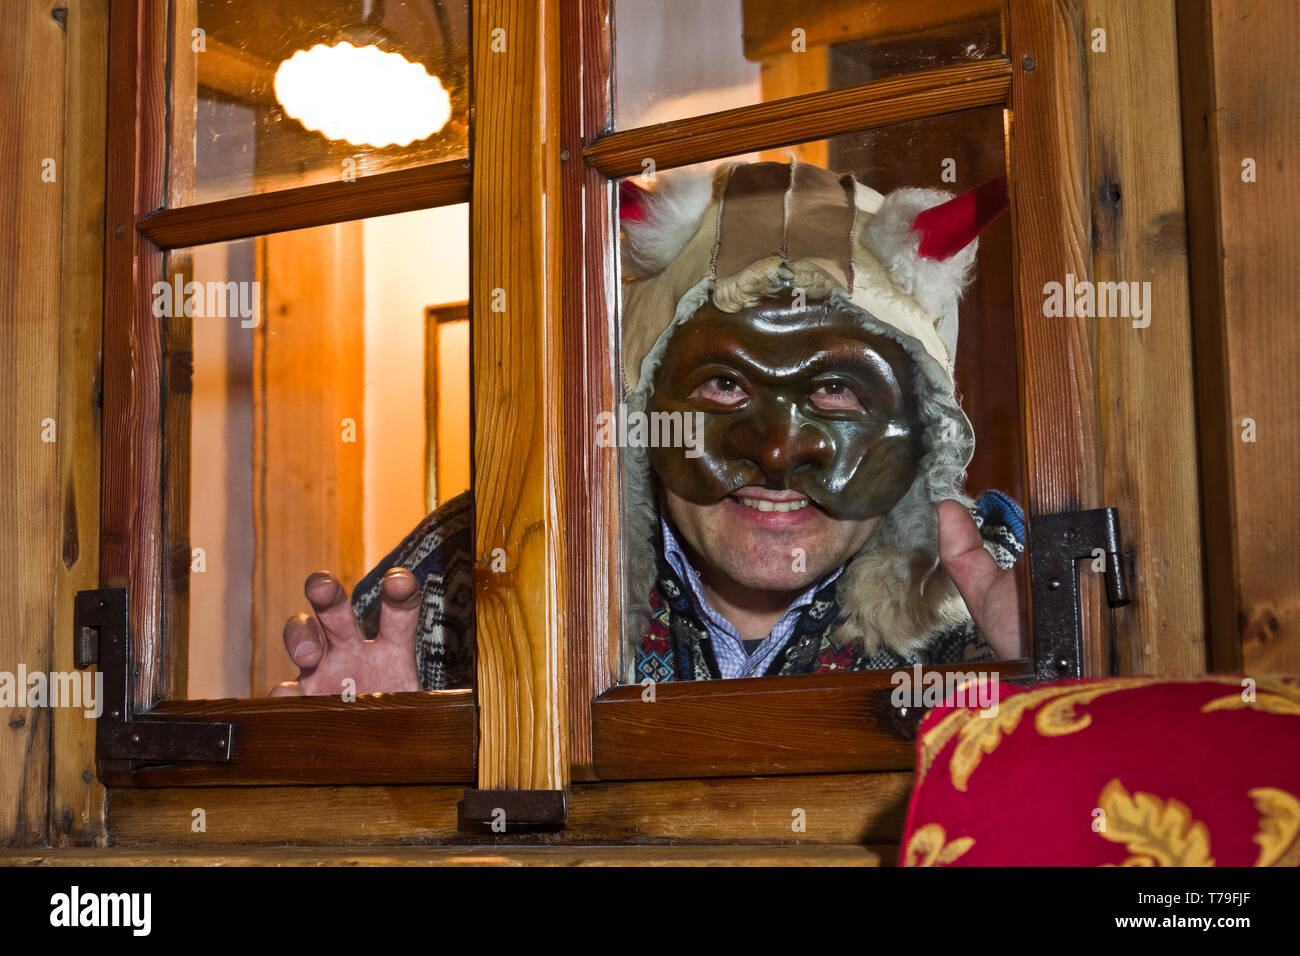 Bormio: Marcello Canclini, esperto di etnografia, storia locale e folclore, indossa una delle maschere del Carnevale bormino.  [ENG]  Bormio: Marcello Stock Photo